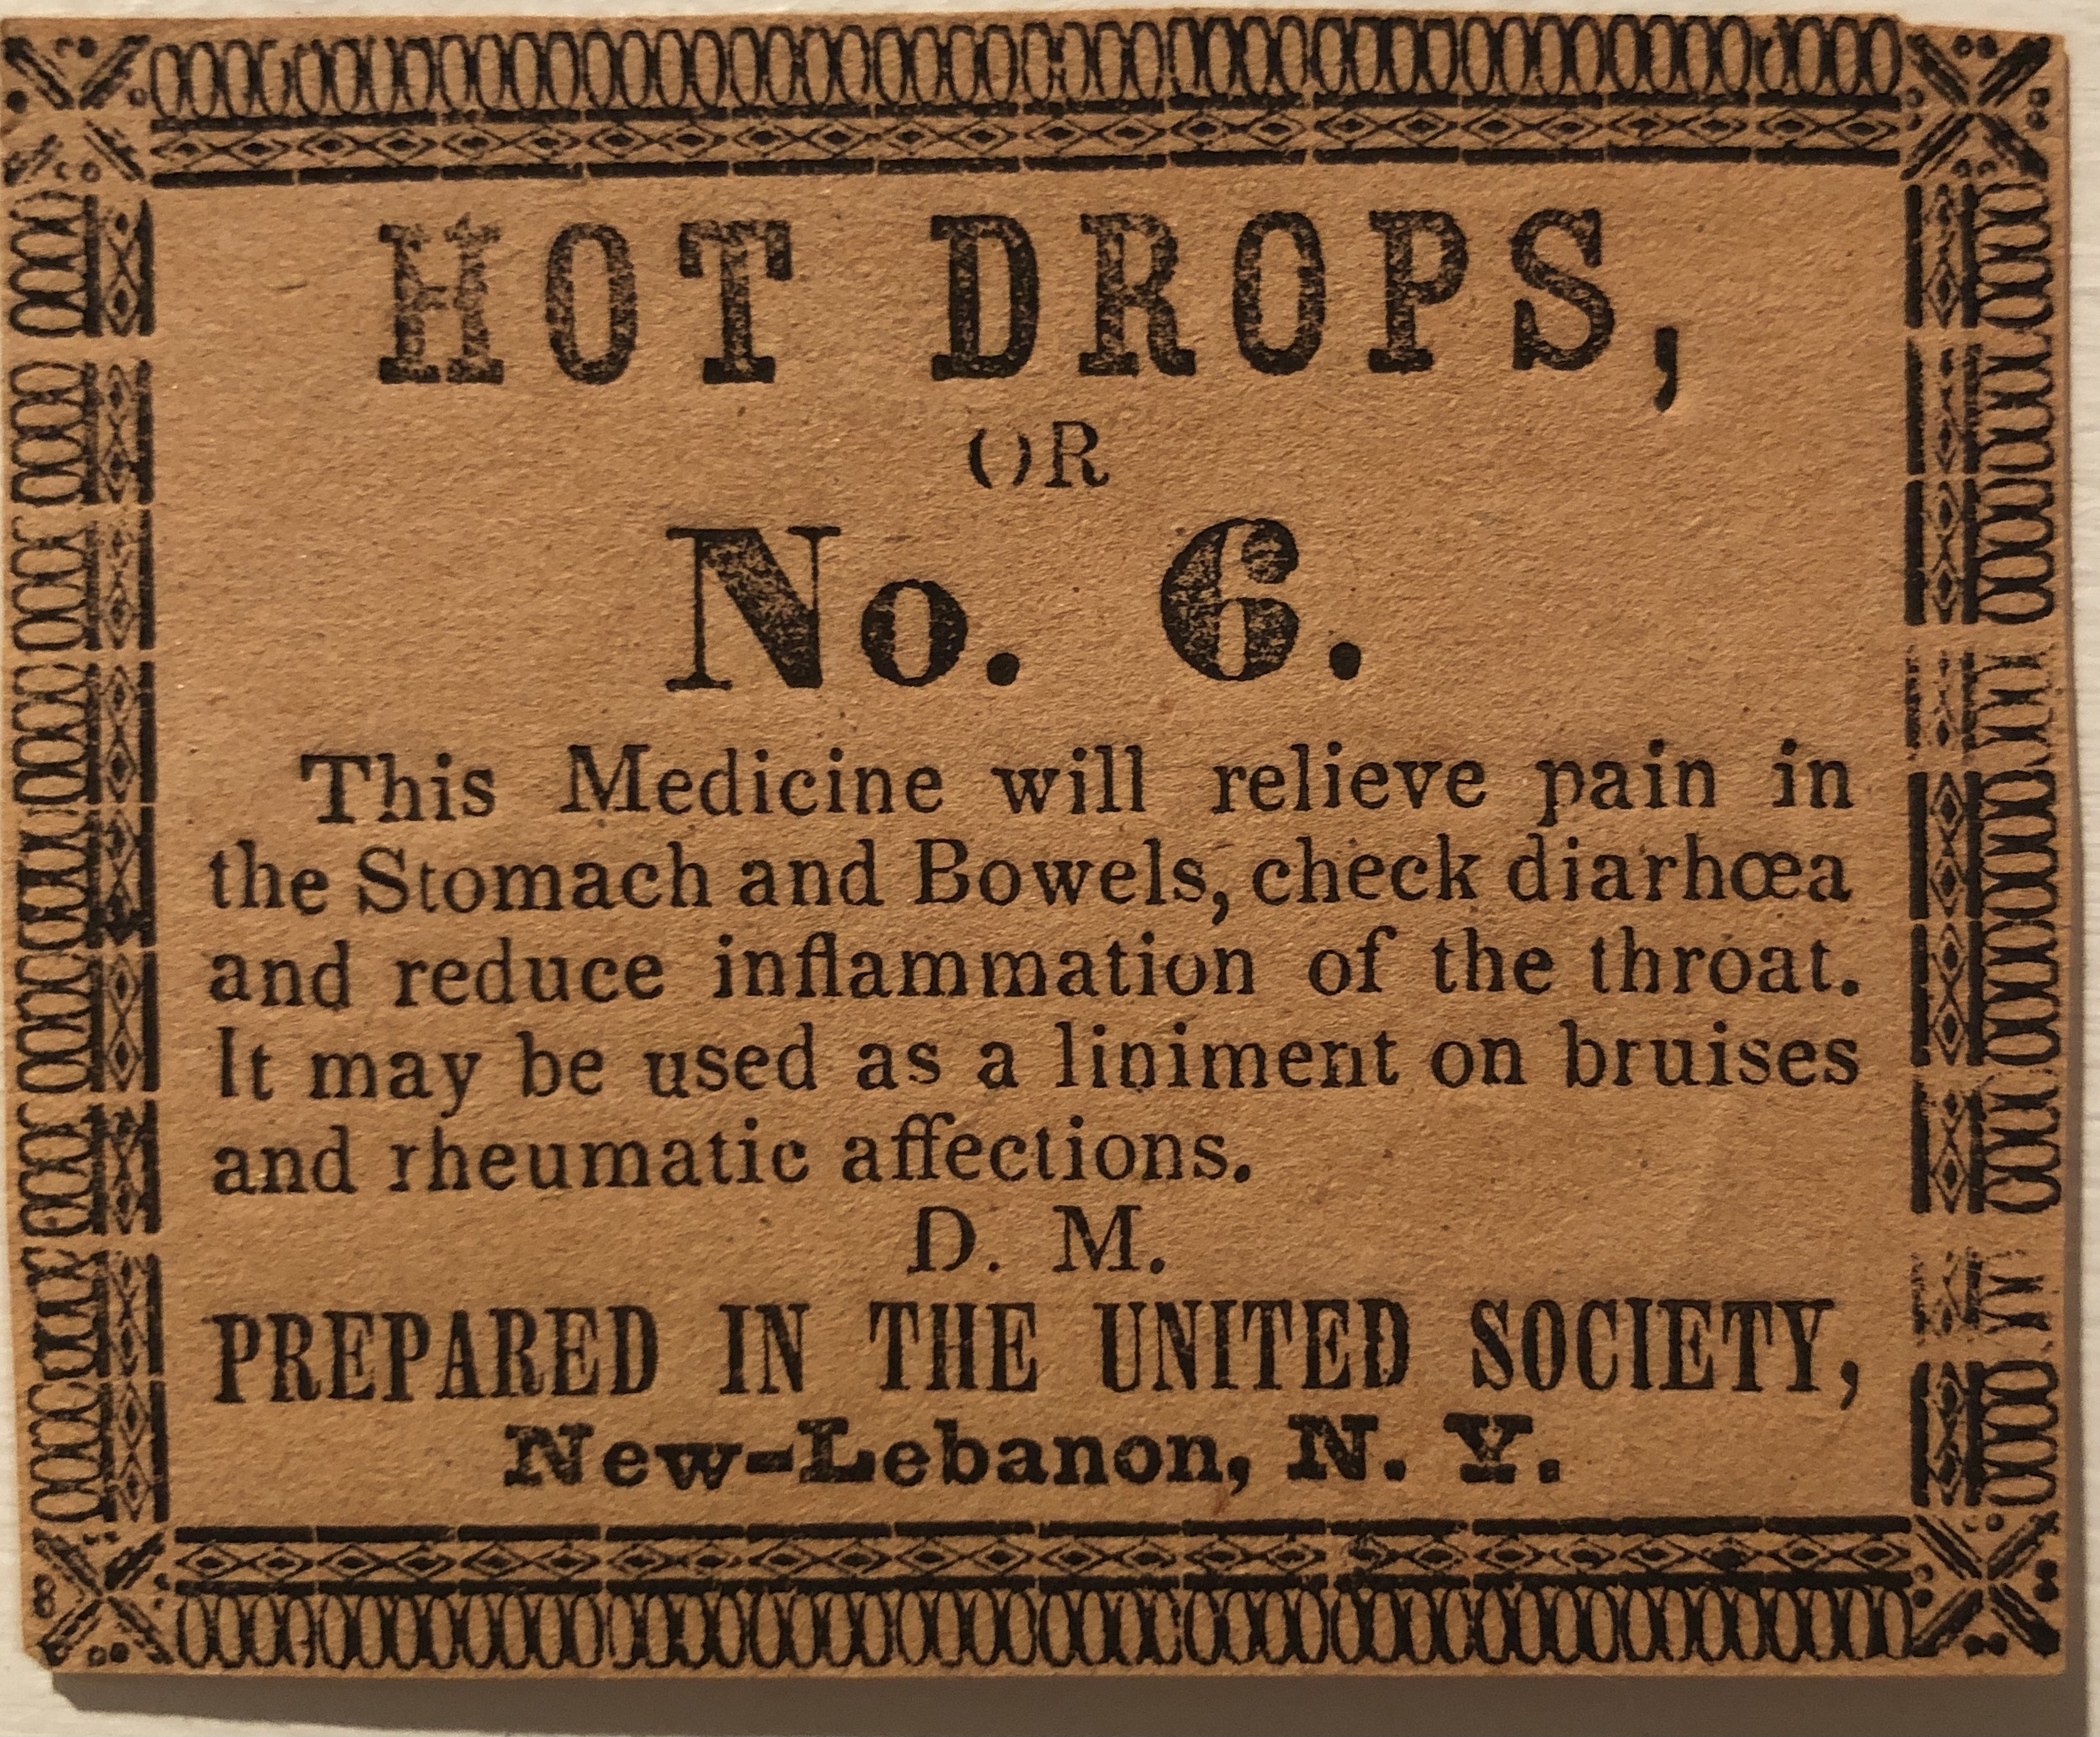 Hot drops, medicine no 6.